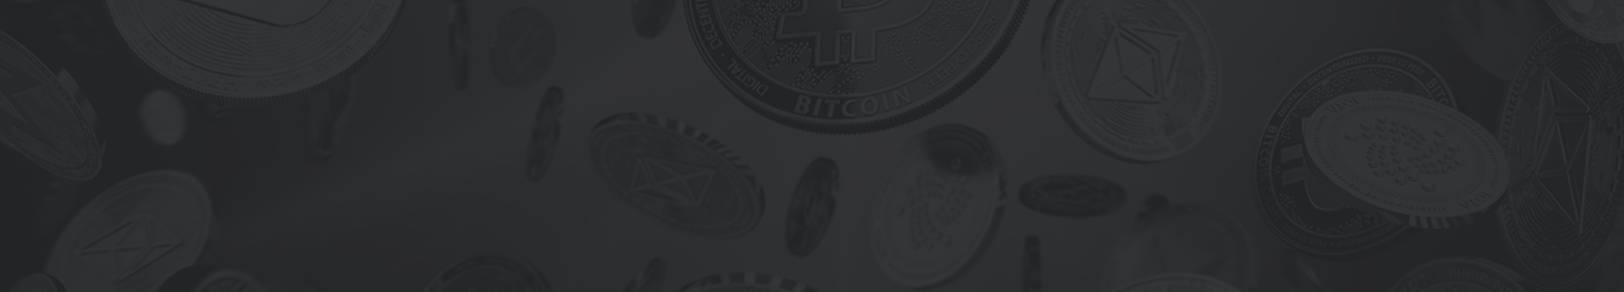 Bitcoin Machine - Masih Belum Bergabung dengan Bitcoin Machine?